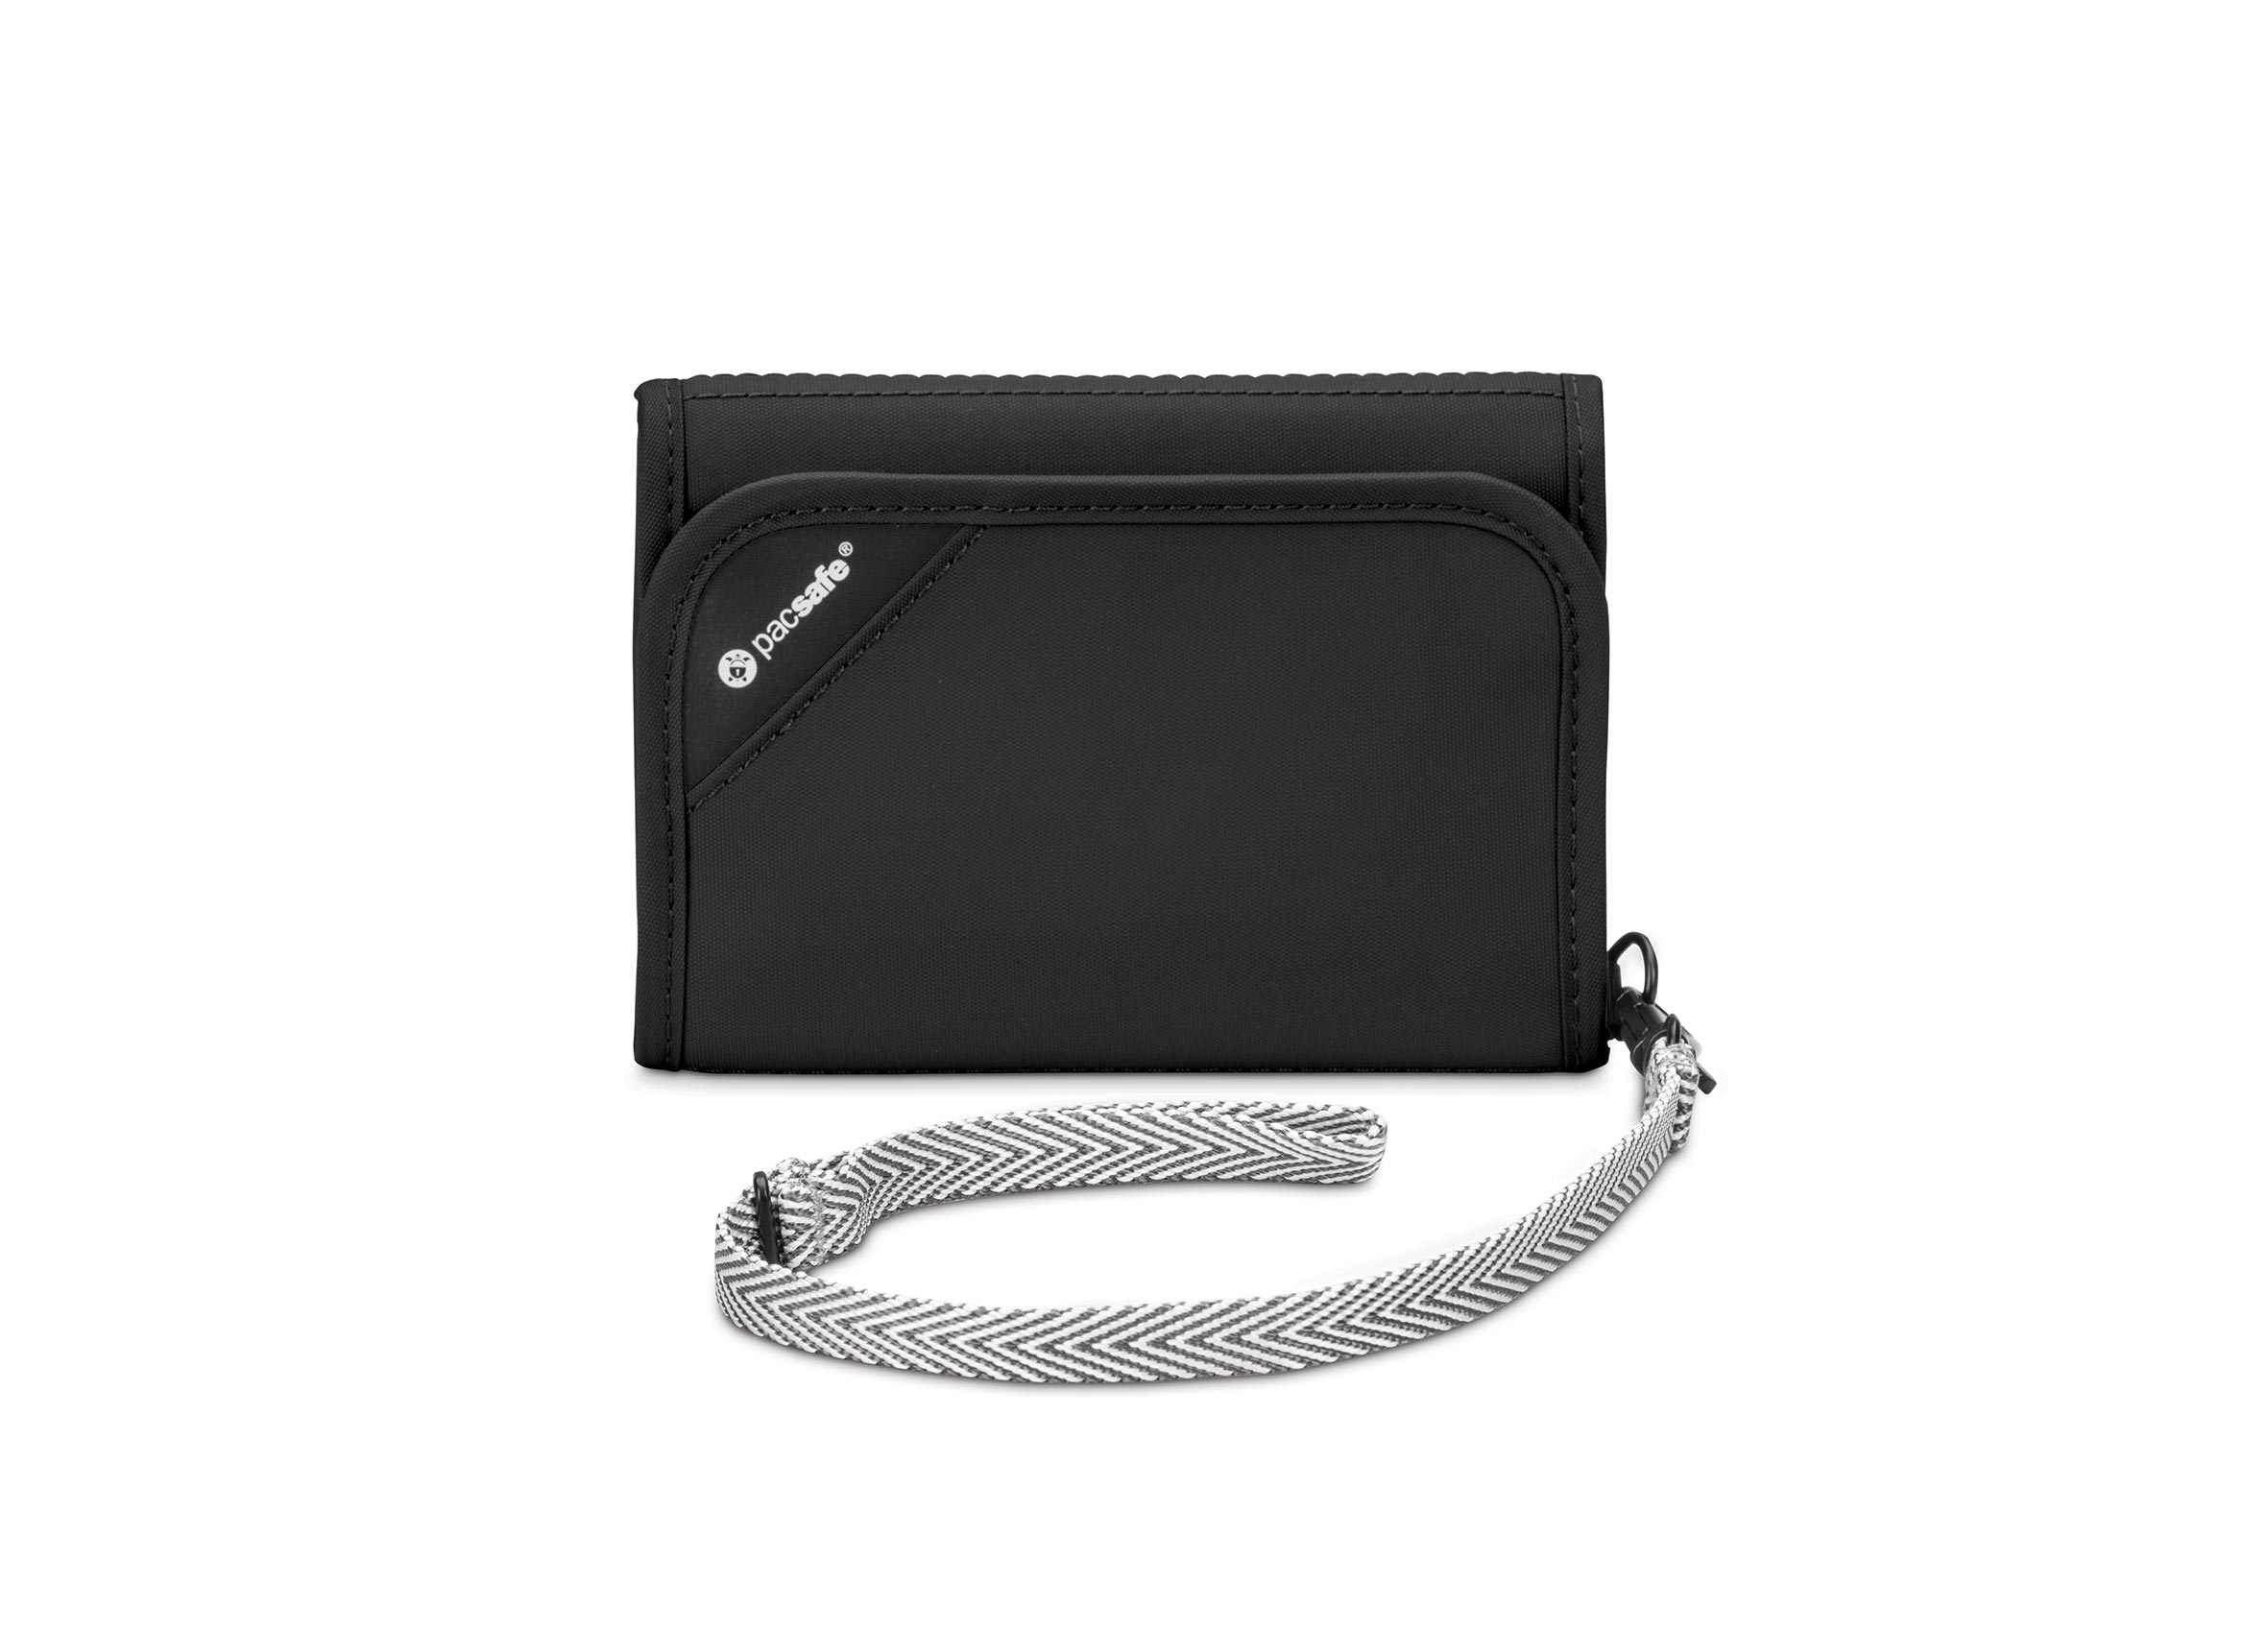 Pacsafe - RFIDsafe V125 trifold Wallet - Black-1